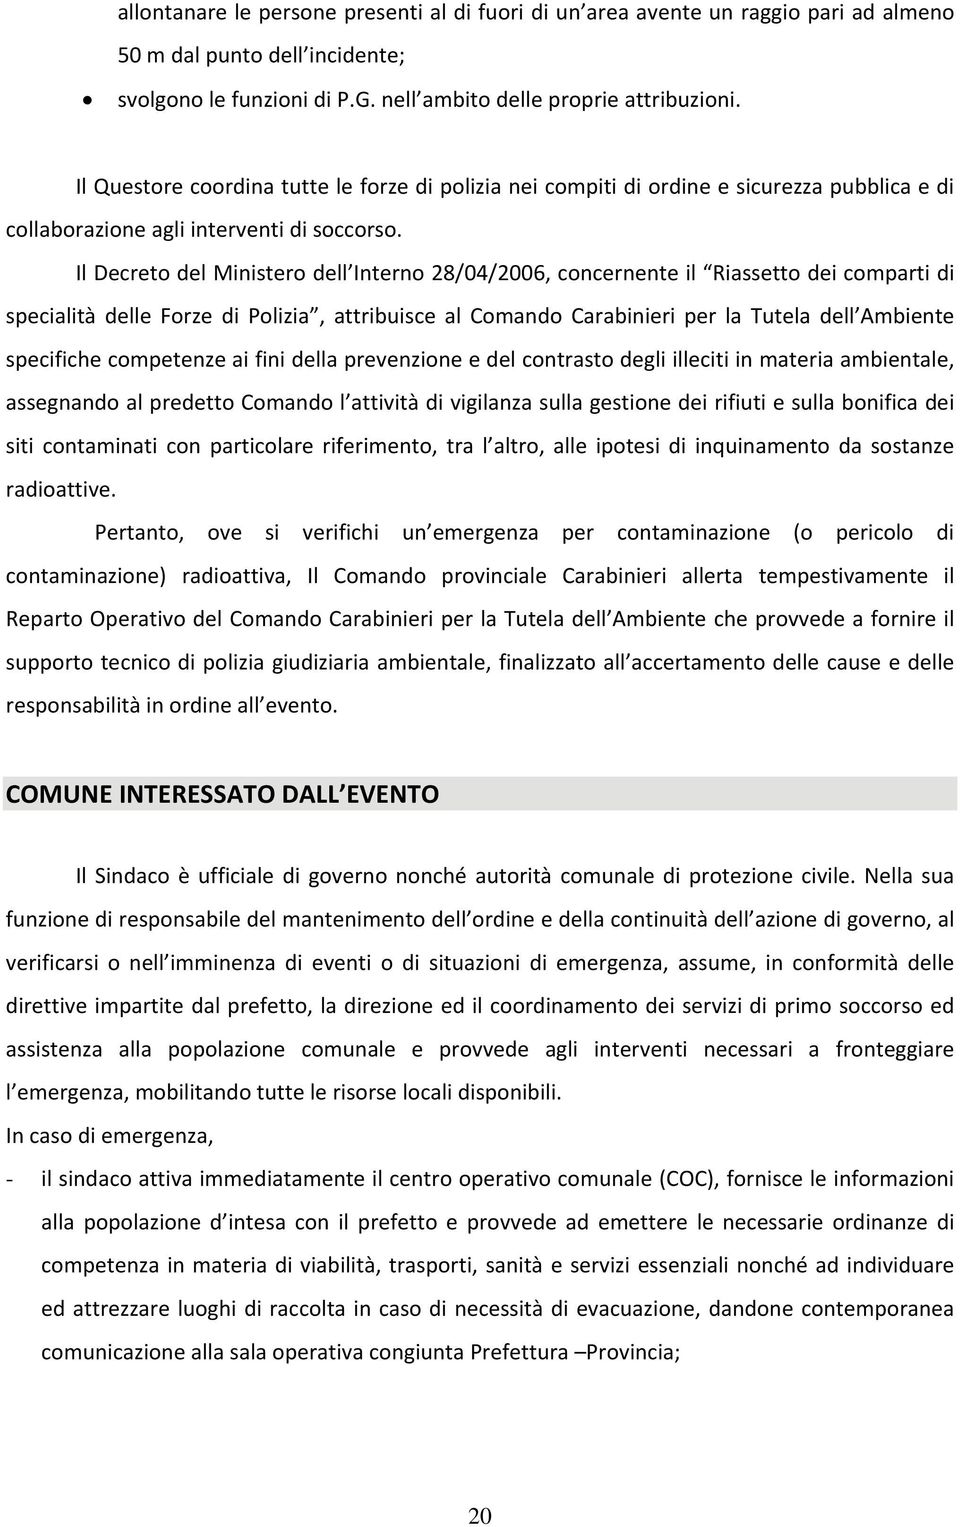 Il Decreto del Ministero dell Interno 28/04/2006, concernente il Riassetto dei comparti di specialità delle Forze di Polizia, attribuisce al Comando Carabinieri per la Tutela dell Ambiente specifiche